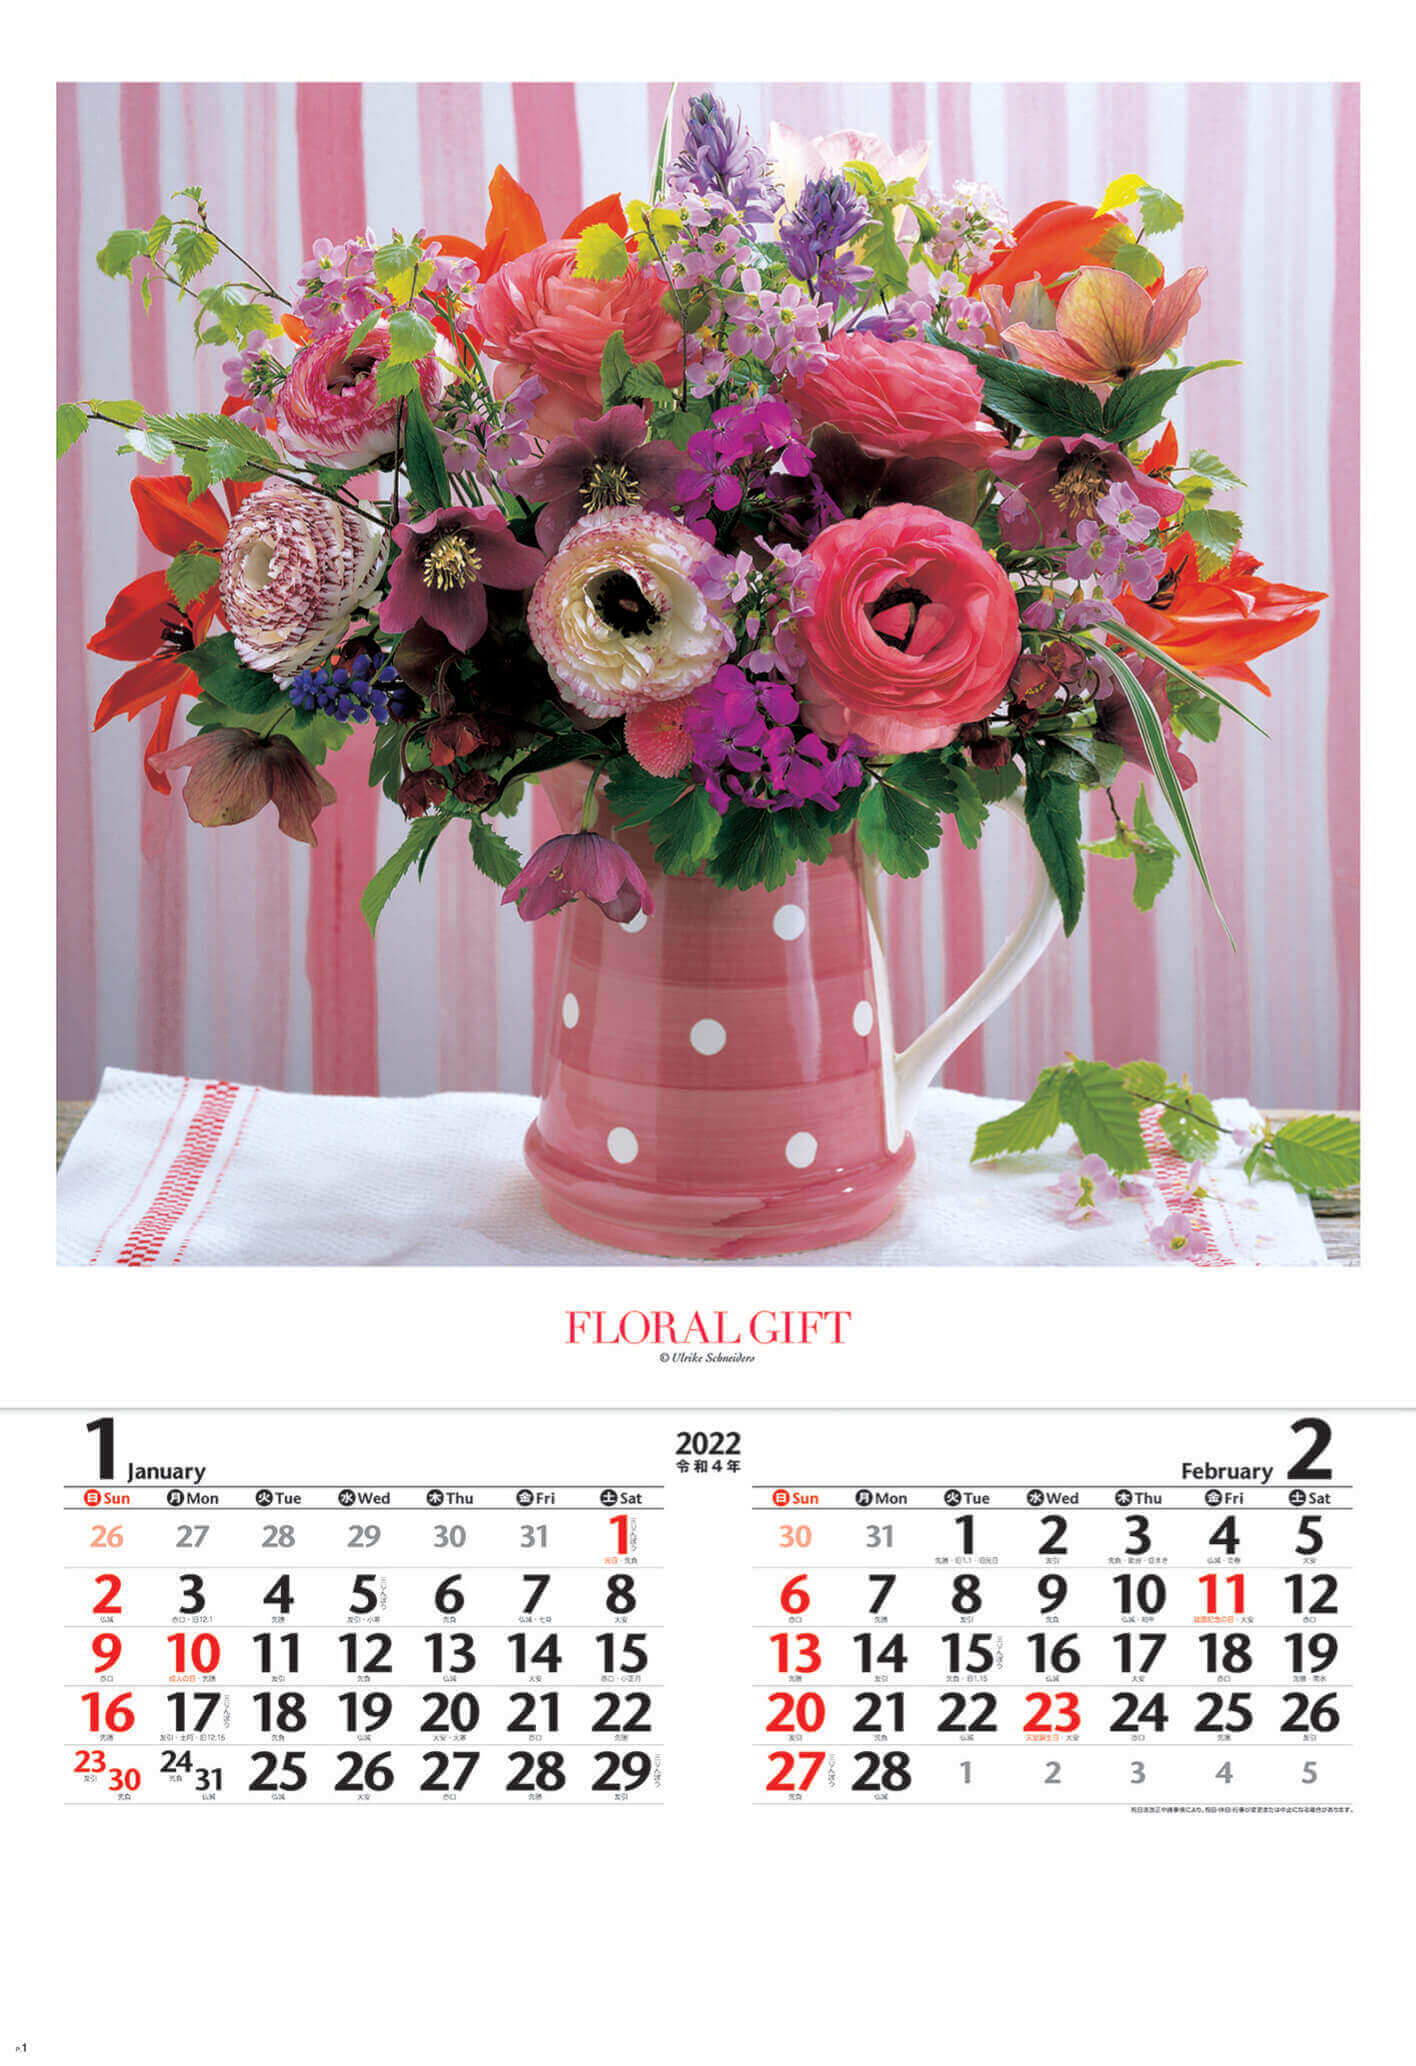  花の贈り物(フィルムカレンダー) 2022年カレンダーの画像